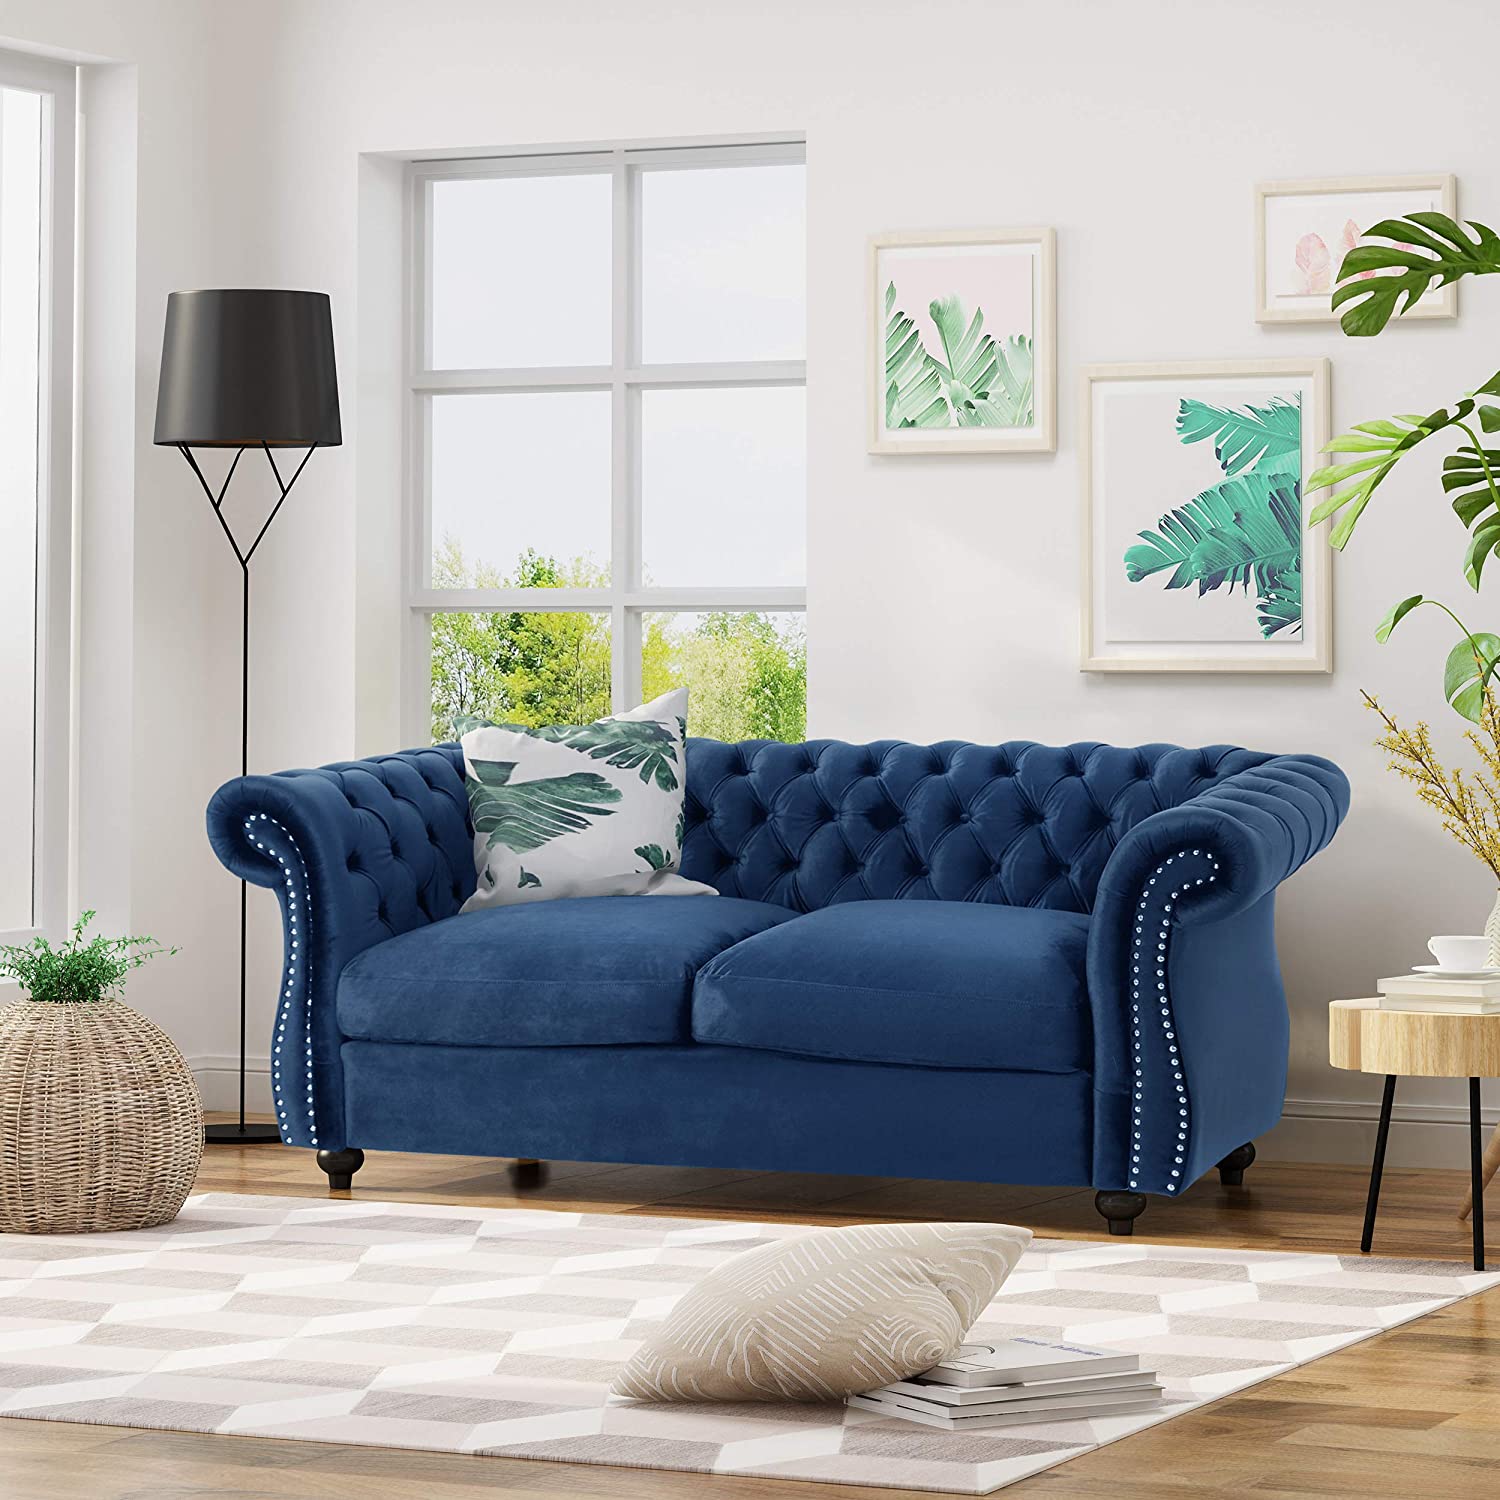 buy sofa set online india price lowest in bangalore, mumbai, chennai, delhi | fabric sofa design | 3 seater sofa set price